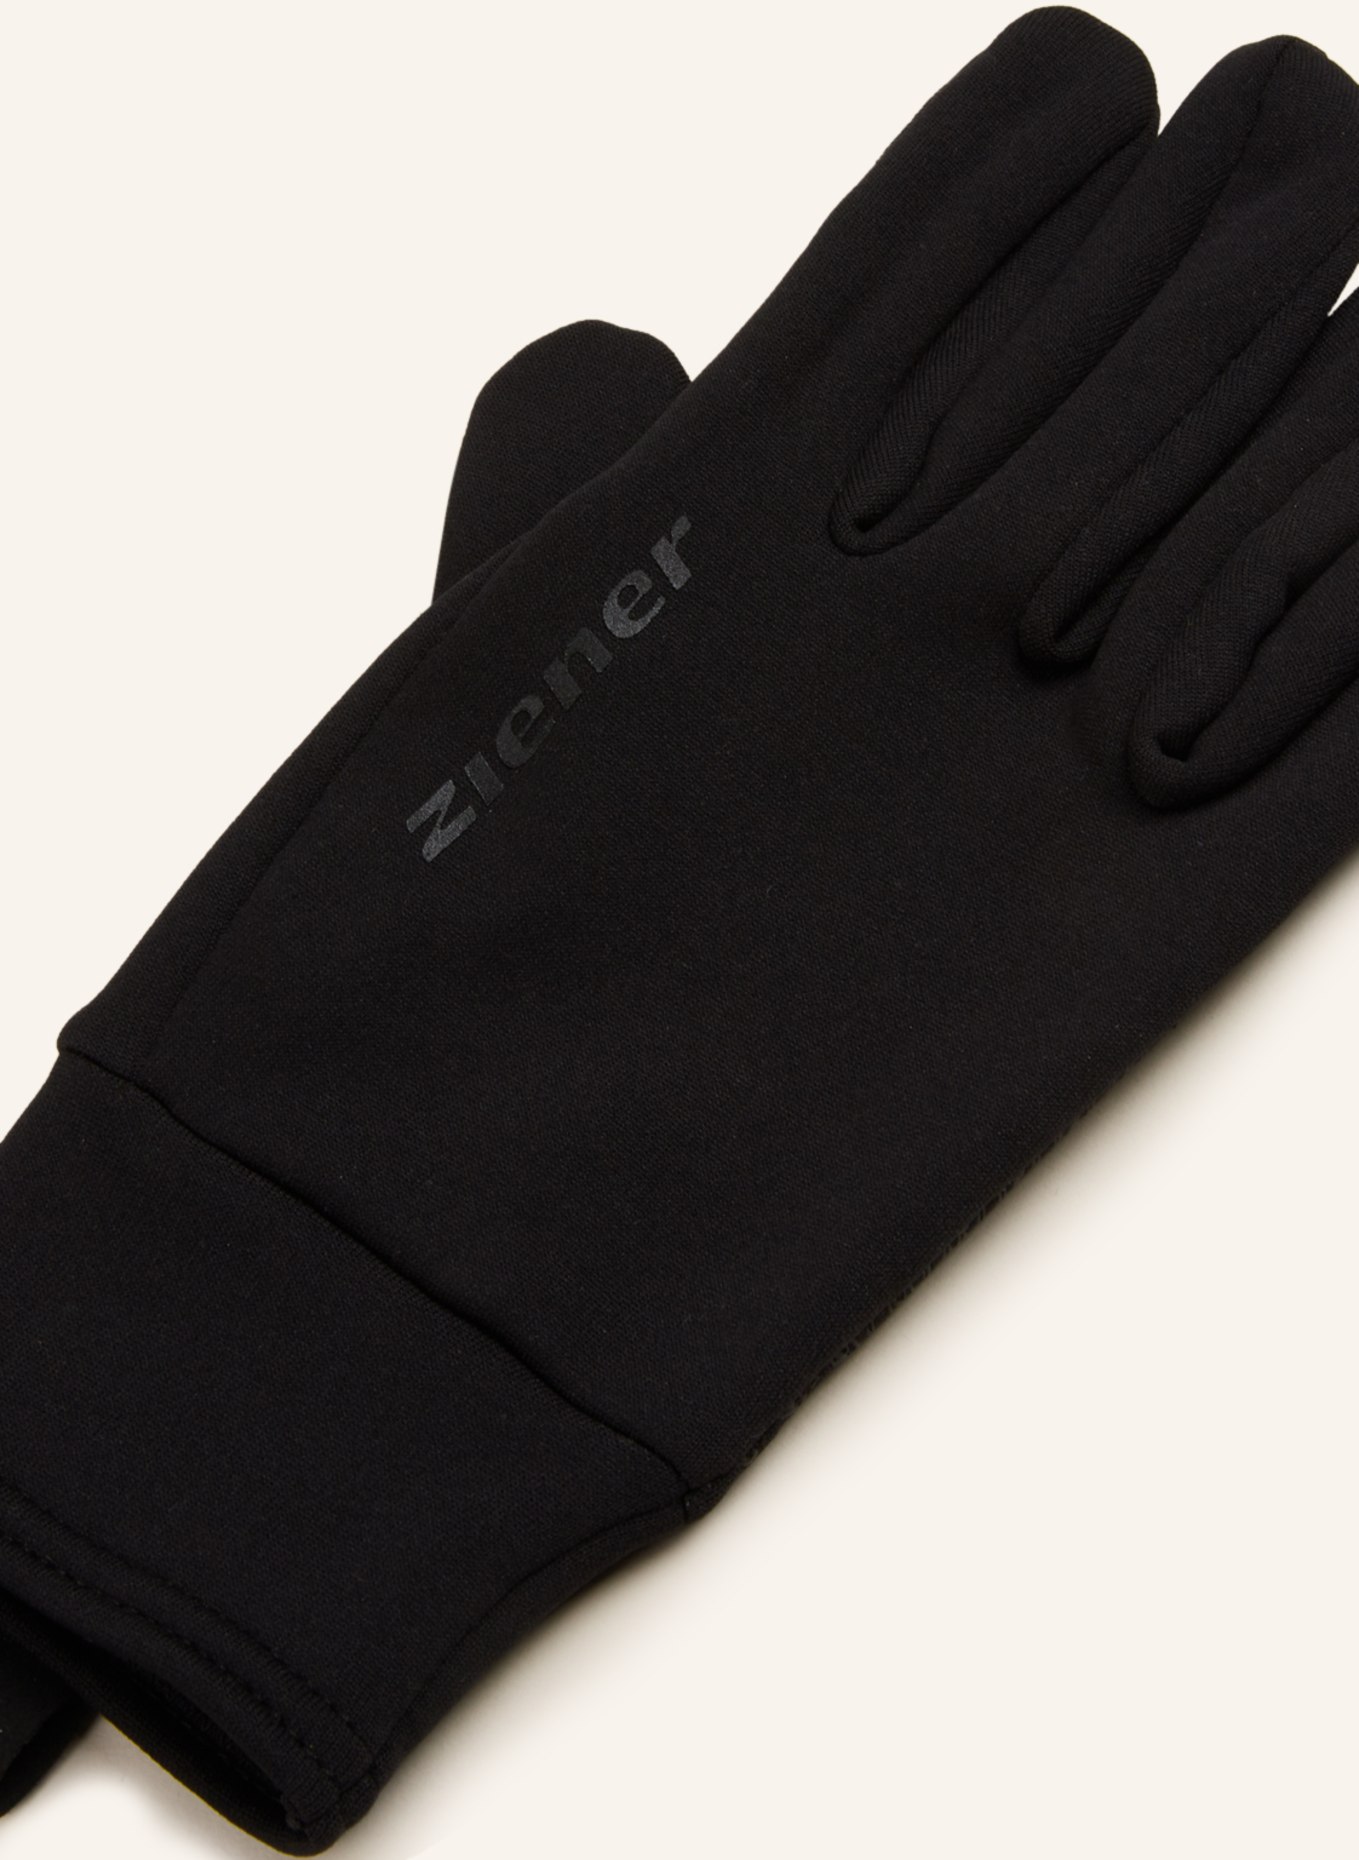 ziener Multisport-Handschuhe ISANTO TOUCH schwarz mit in Touchscreen-Funktion